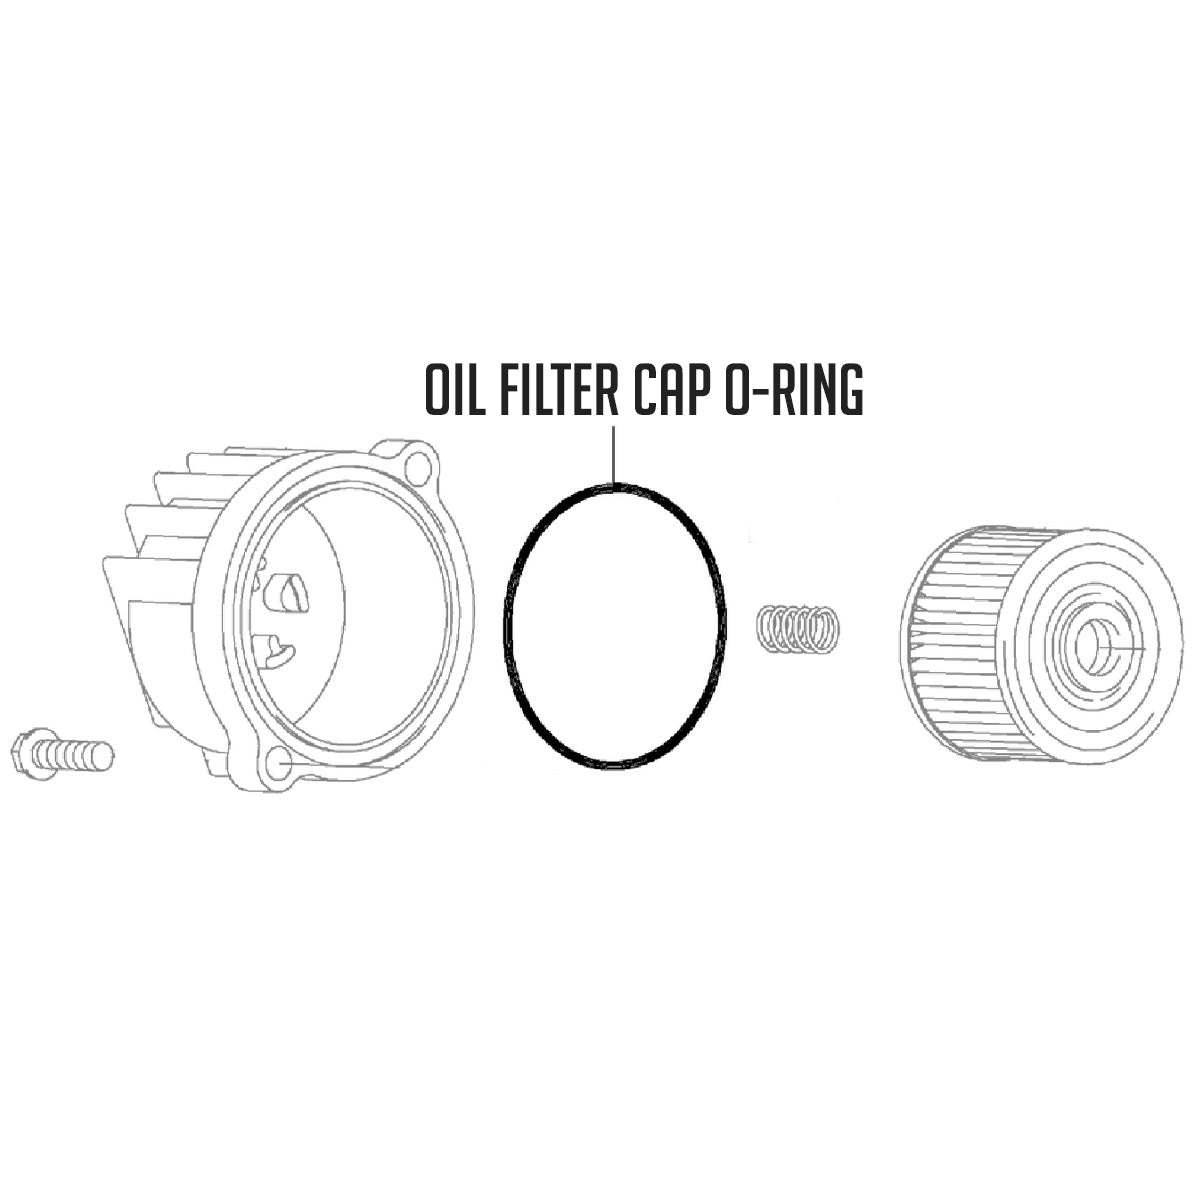 Oil Filter Cap O-Ring - KLX110